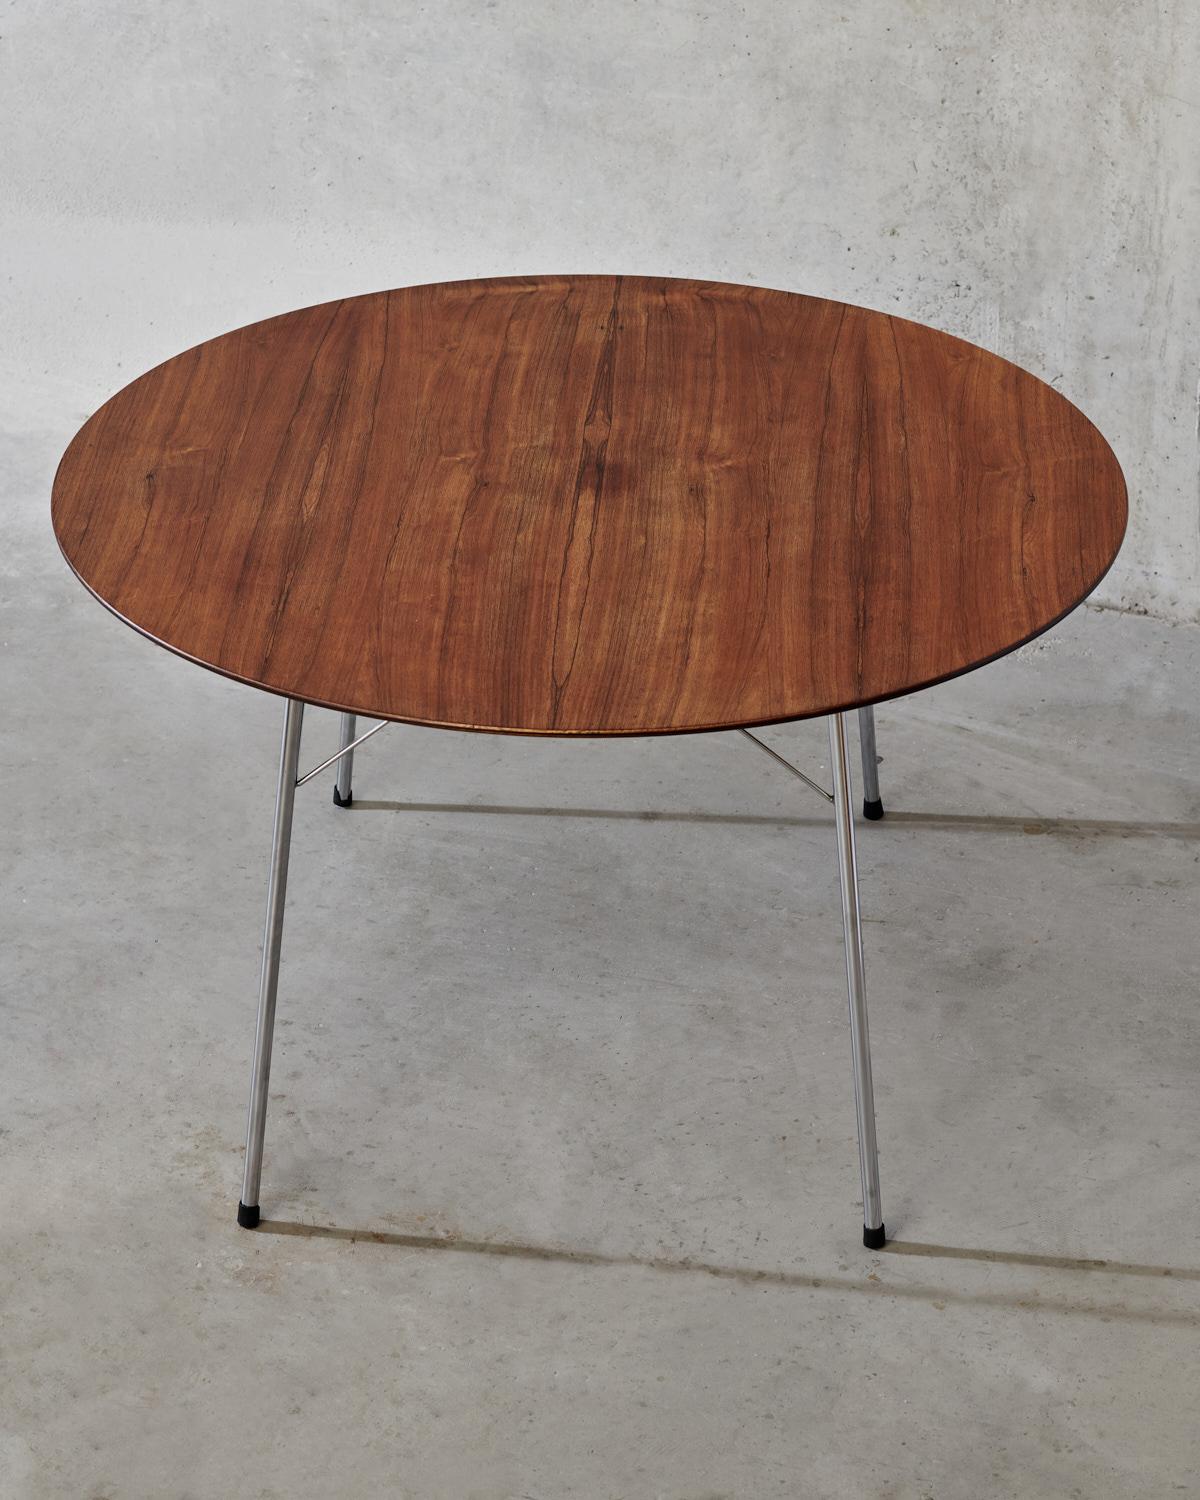 Danish Scandinavian Round Teak Dining Table Mod. 3600 by Arne Jacobsen for Fritz Hansen For Sale